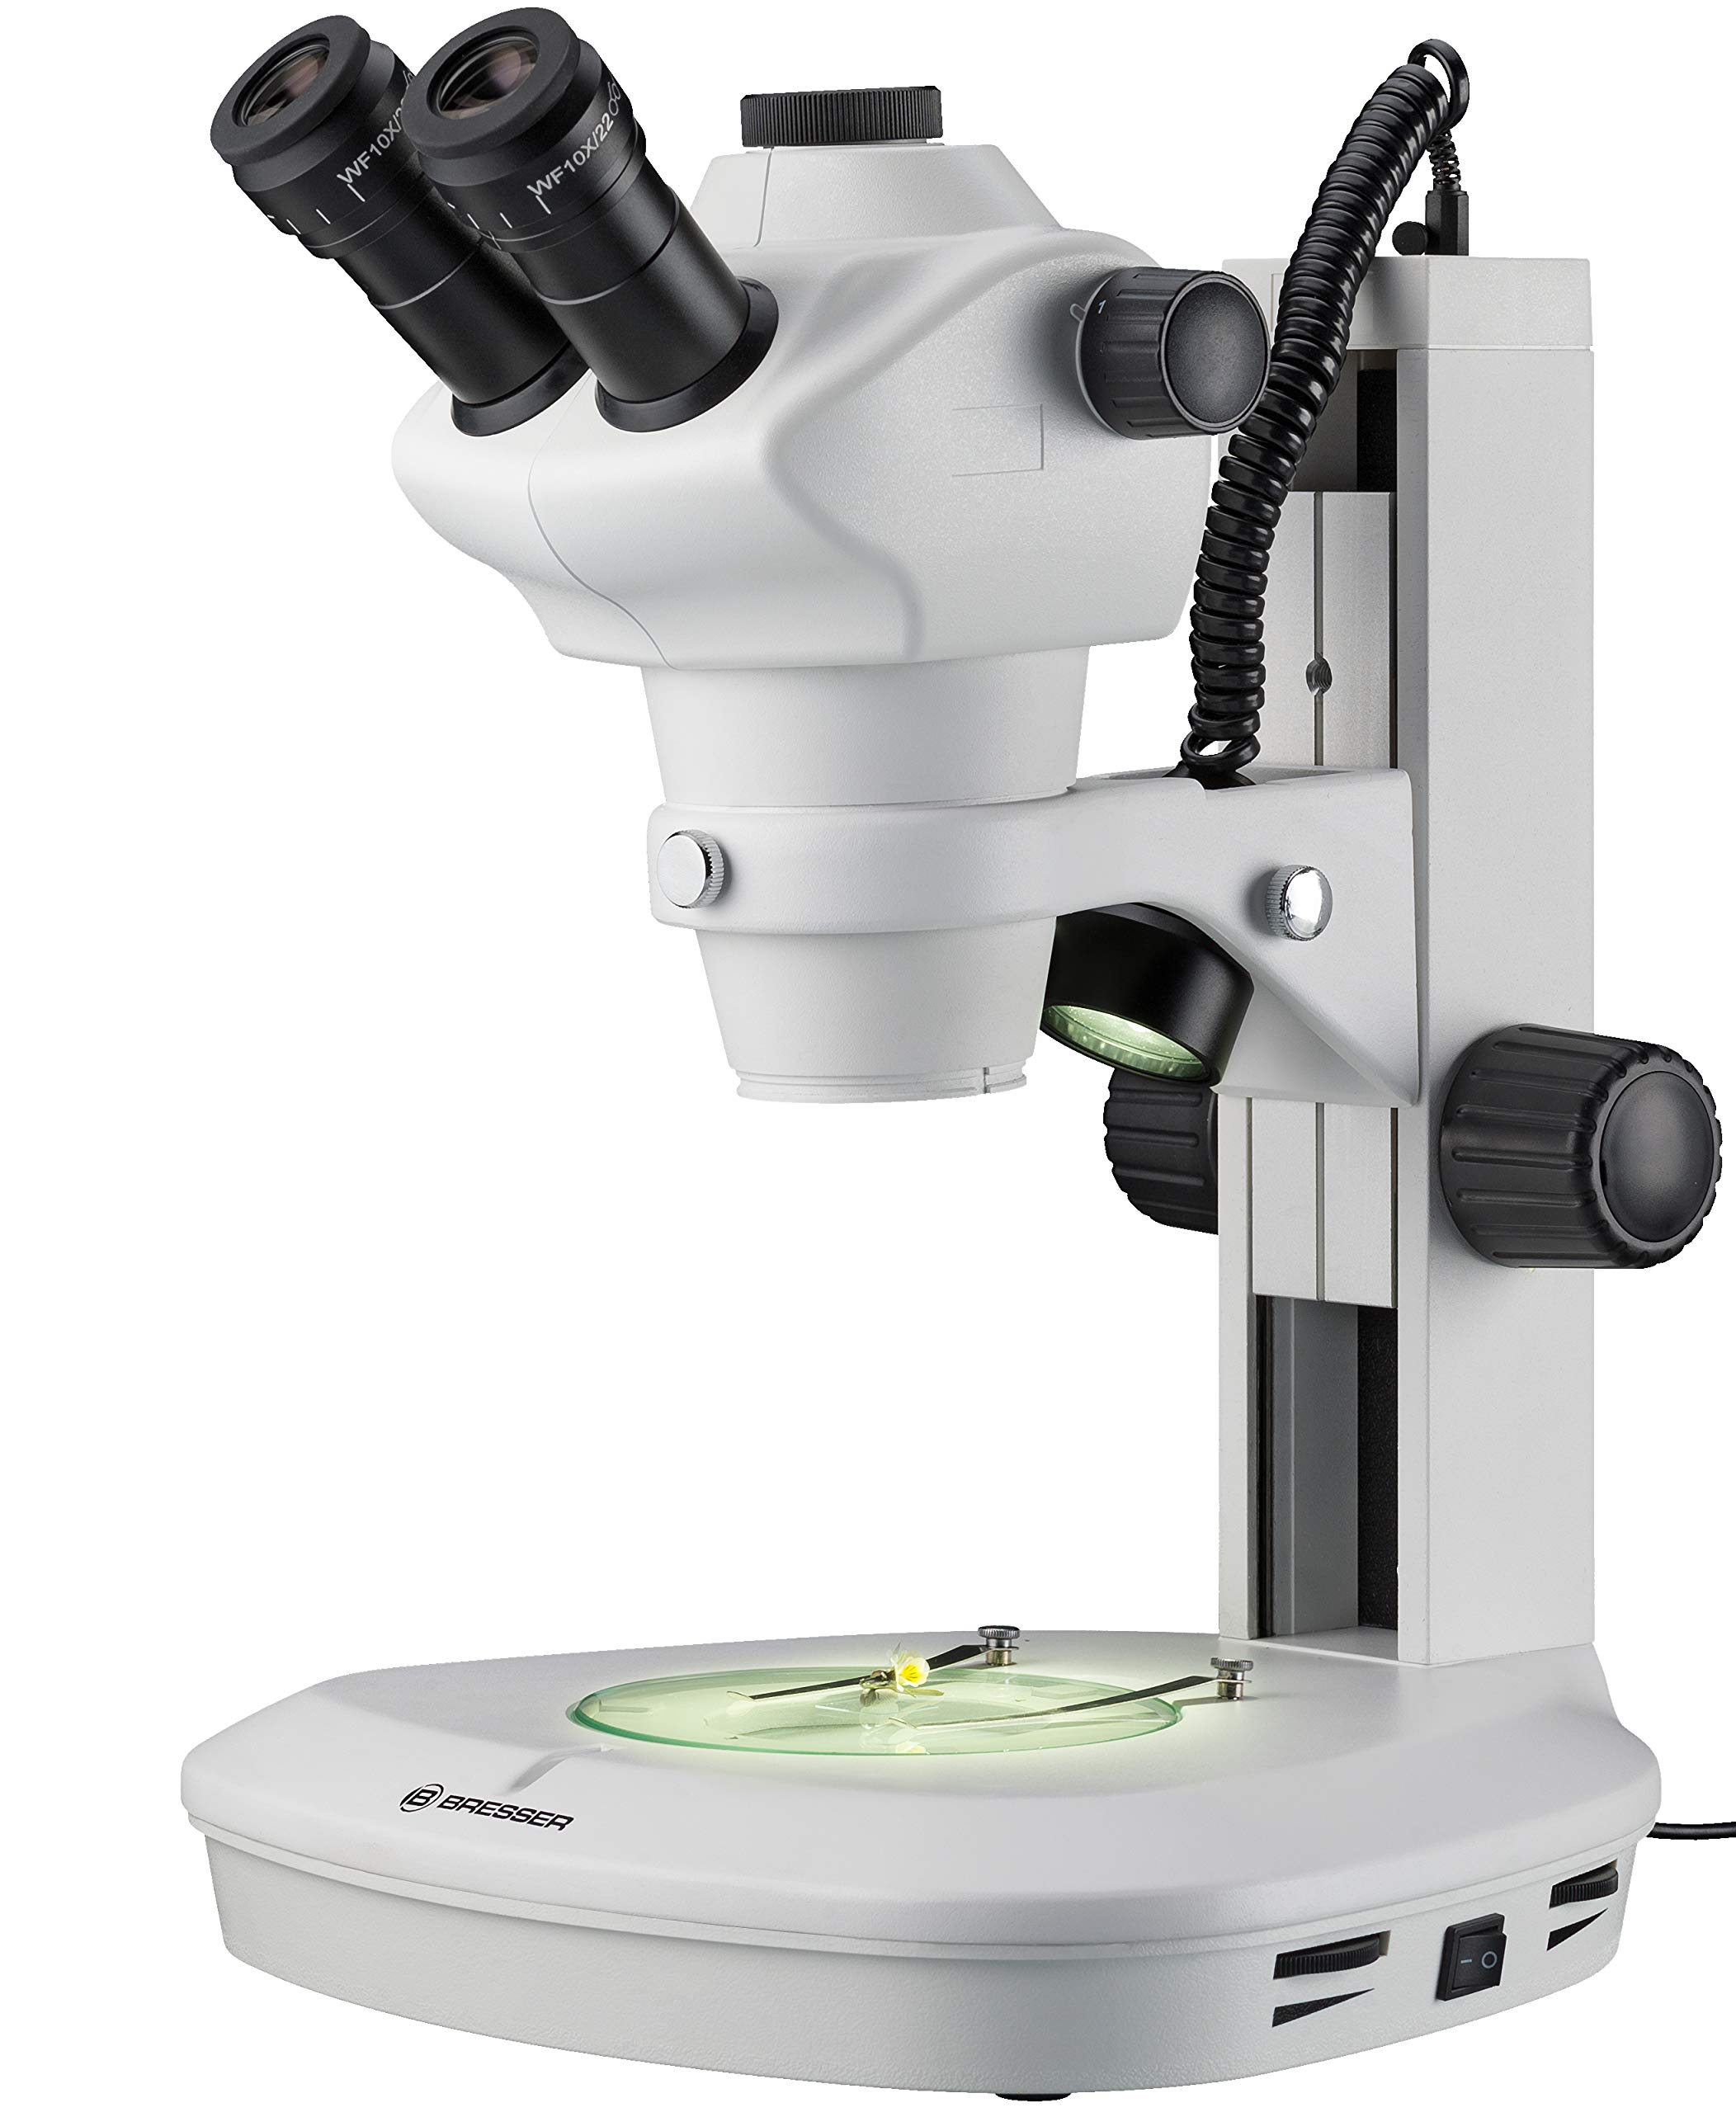 Bresser professionelles Auflicht- Durchlicht Stereo Mikroskop Science ETD-201 8-50x Vergrößerung, mit trinokularem Auszug für c-Mount Kameras, Stereo Zoomobjektiv und langlebiger LED Beleuchtung